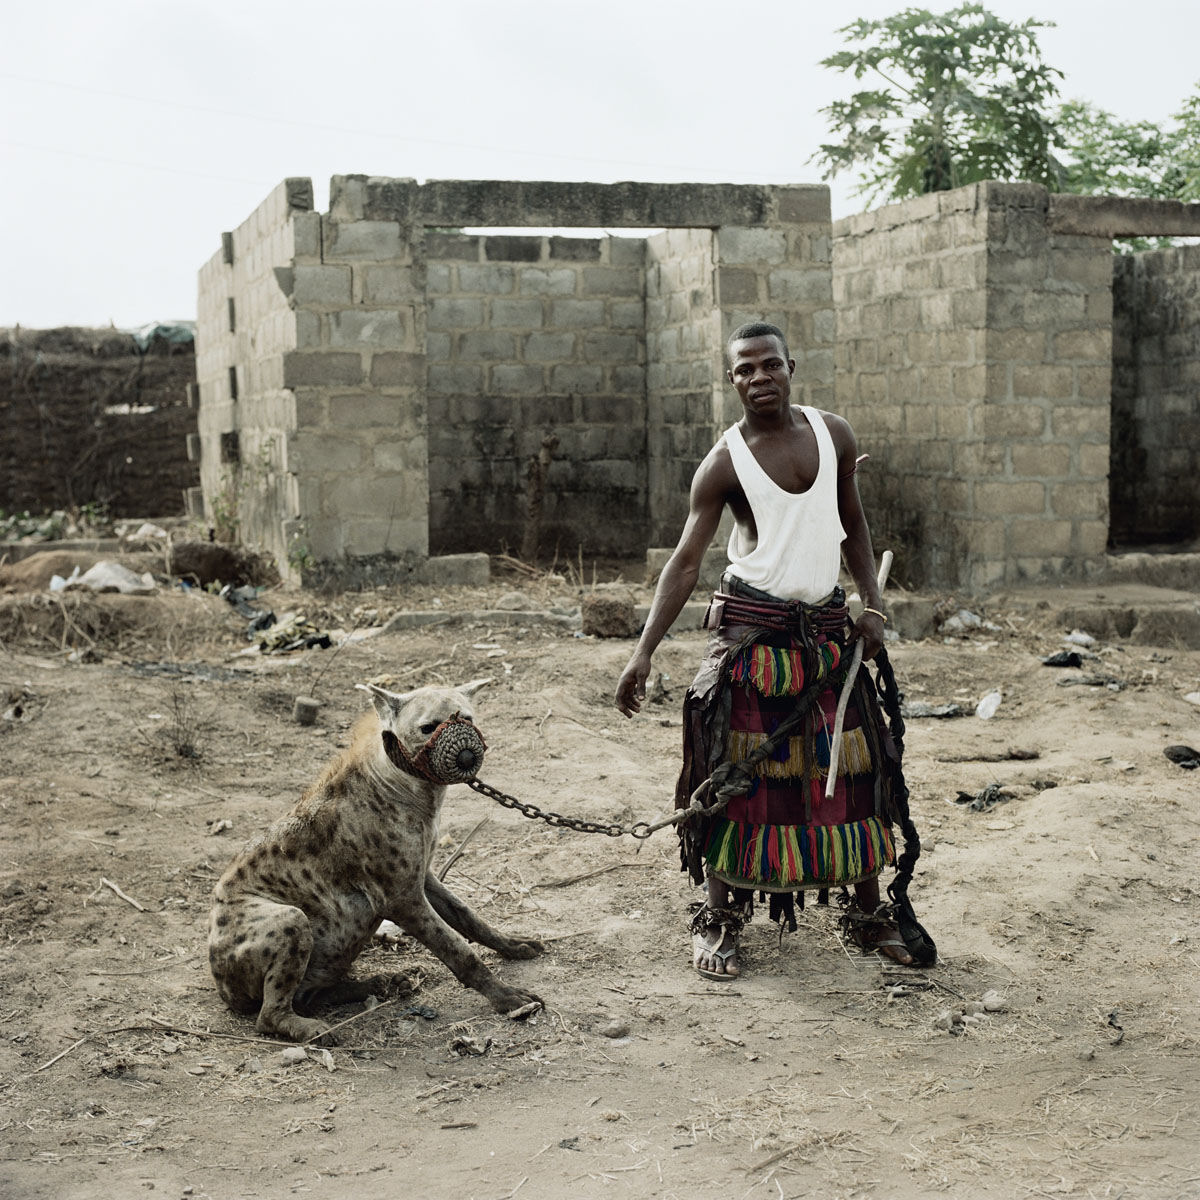 Os homens hiena: fotografias de delinquentes africanos com seus poderosos bichinhos de estimao 14